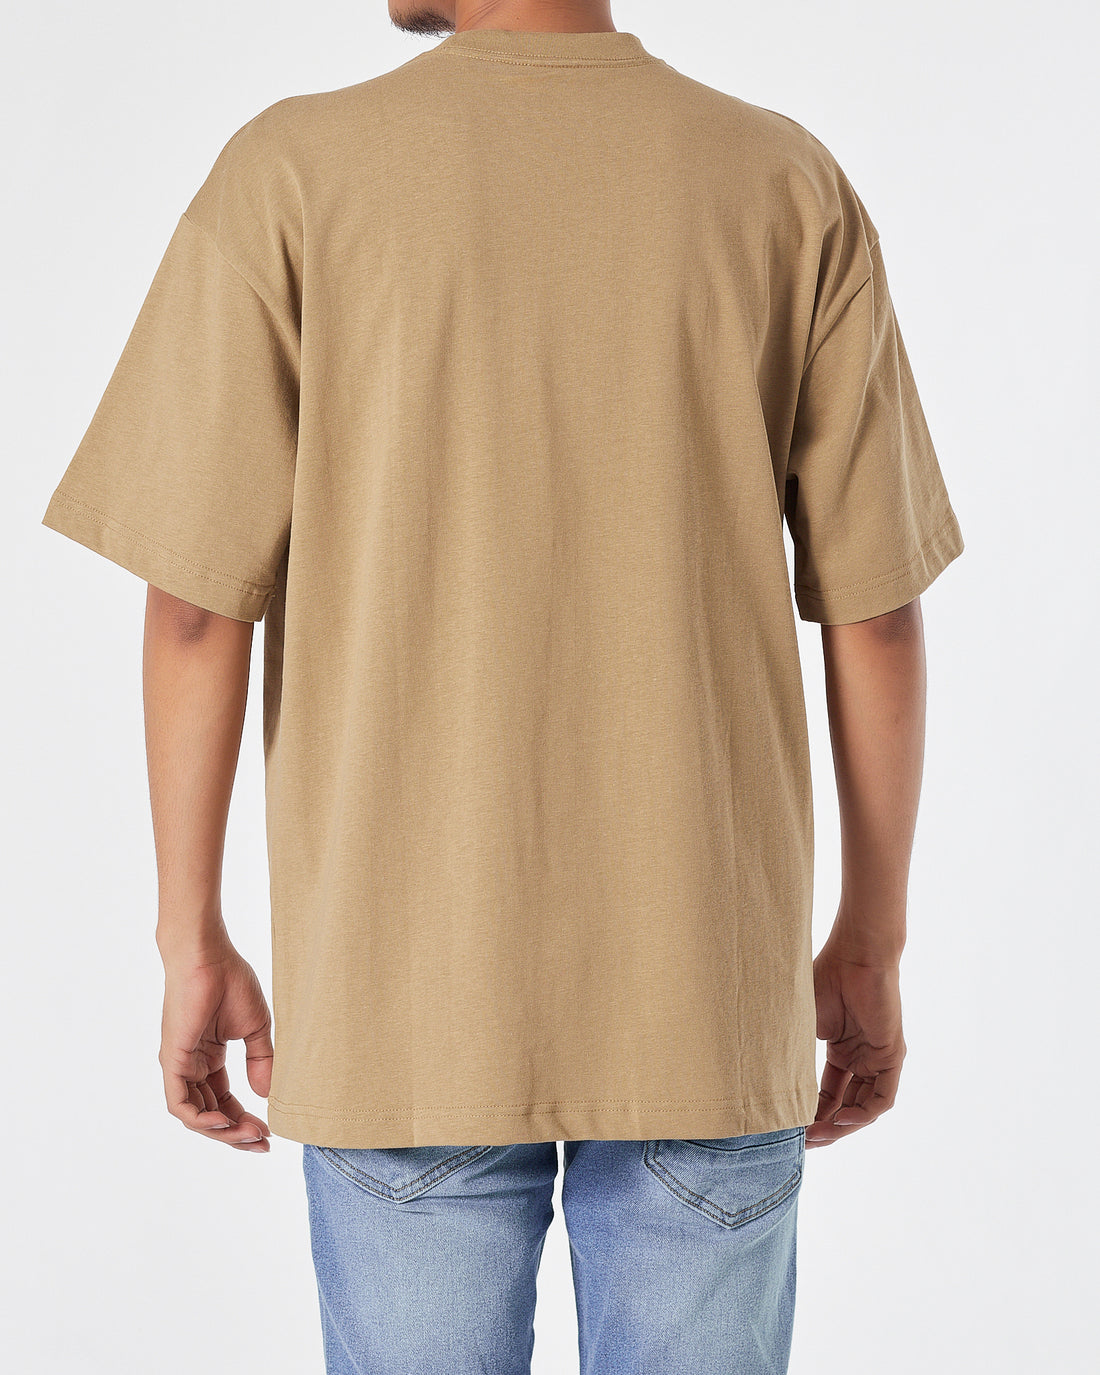 NIK Logo Embroidered Men Brown T-Shirt 16.90